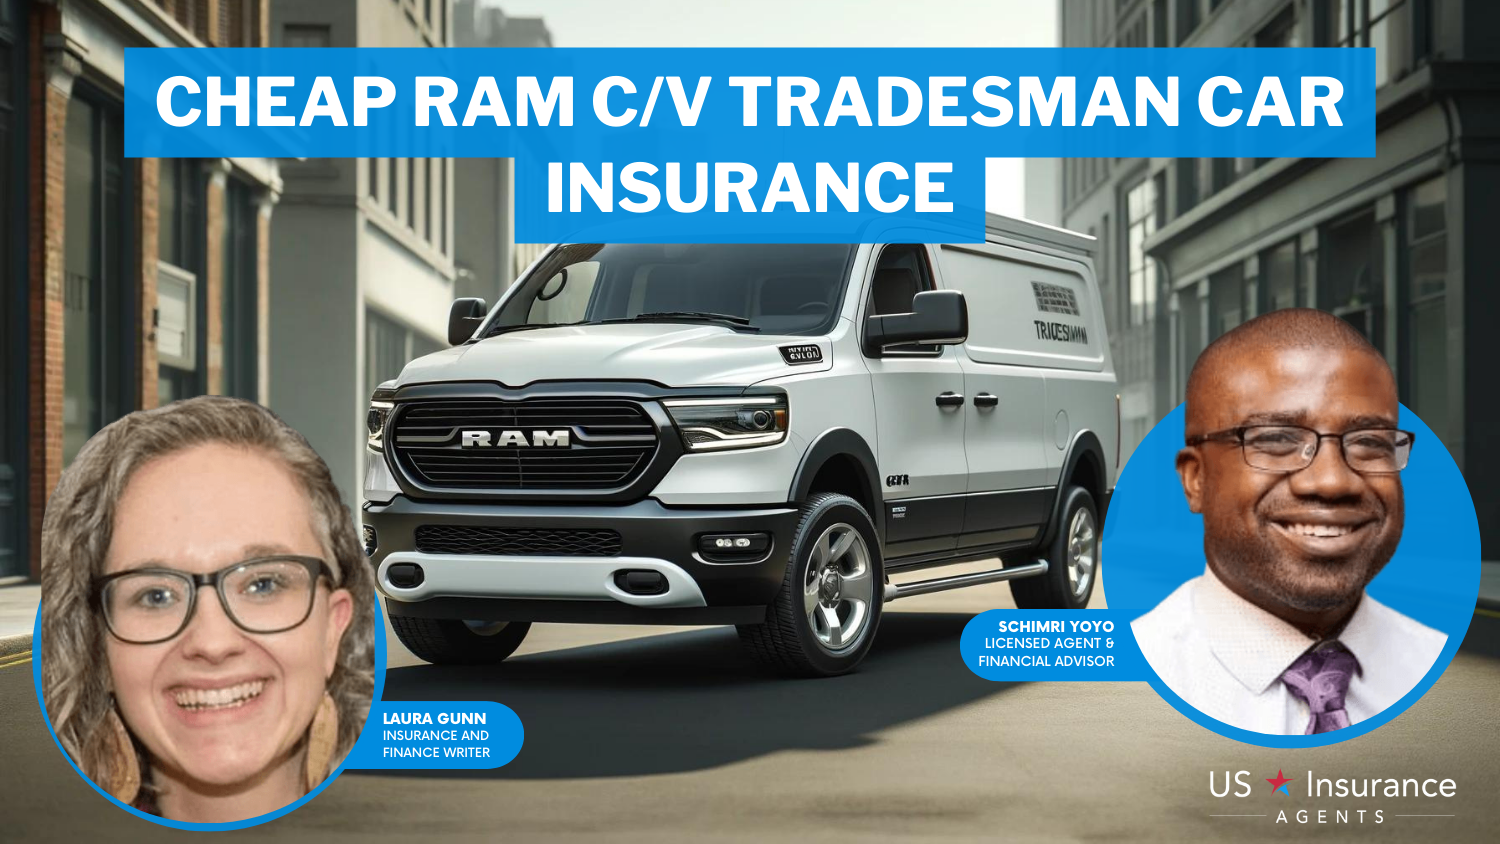 Progressive, State Farm and Allstate: cheap Ram C/V Tradesman car insurance